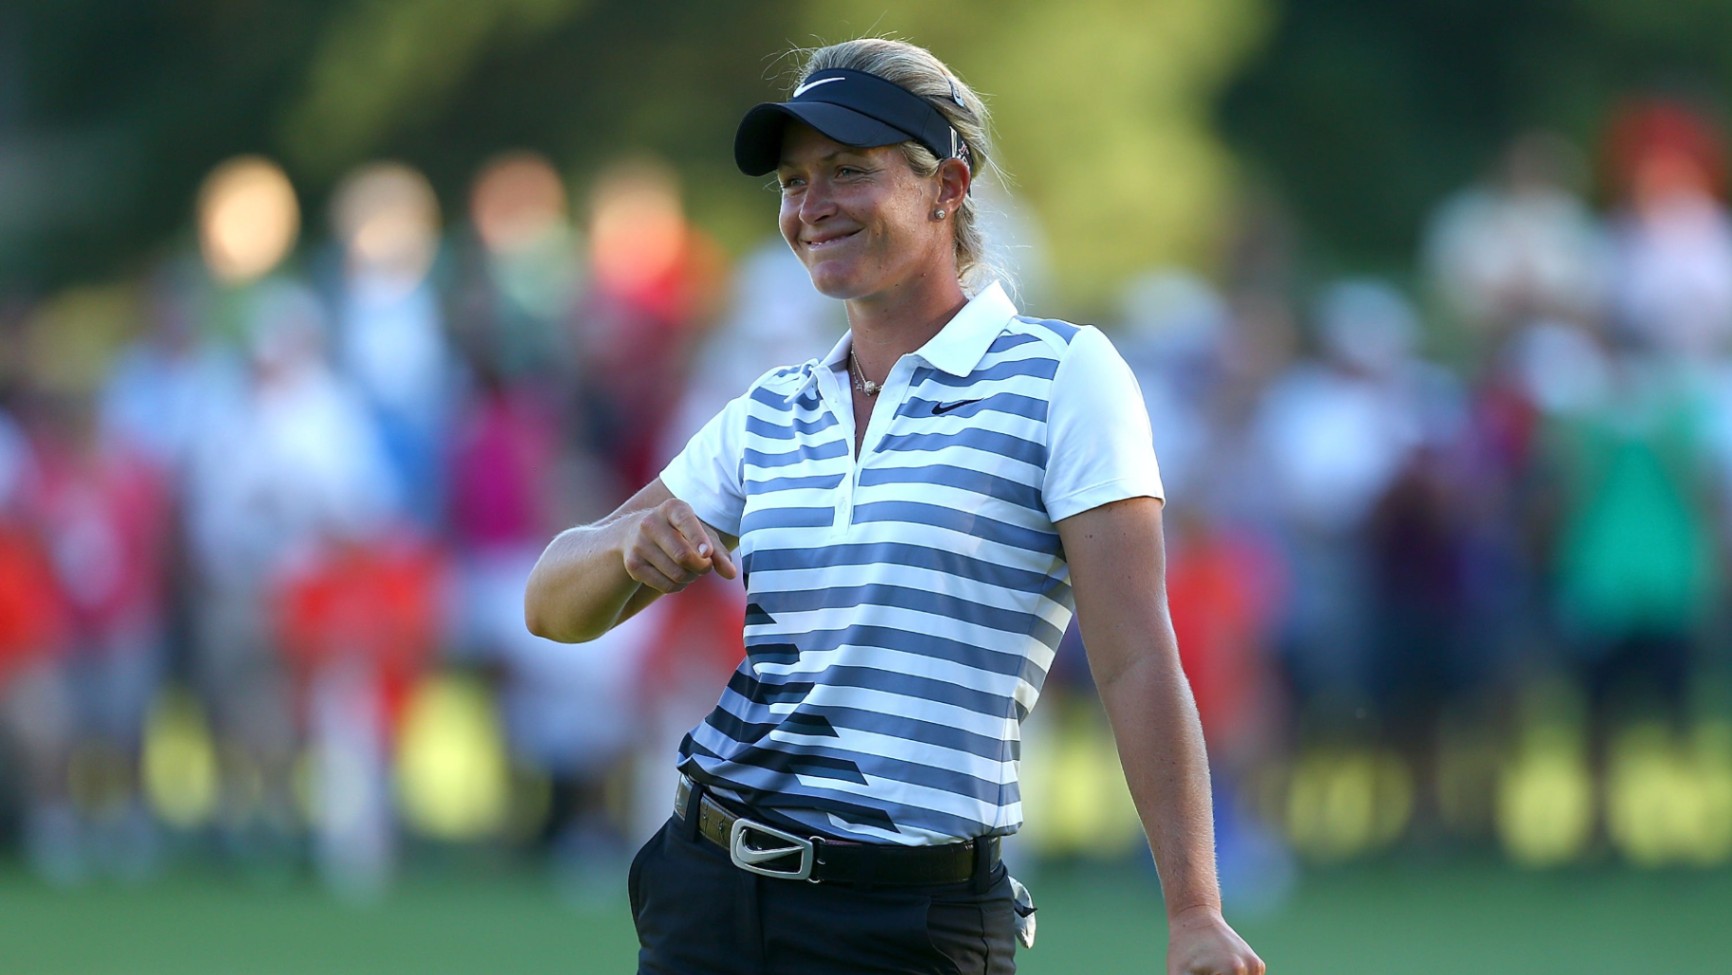 Suzann Pettersen - toda mulher que quer jogar golfe deve conhecer ela